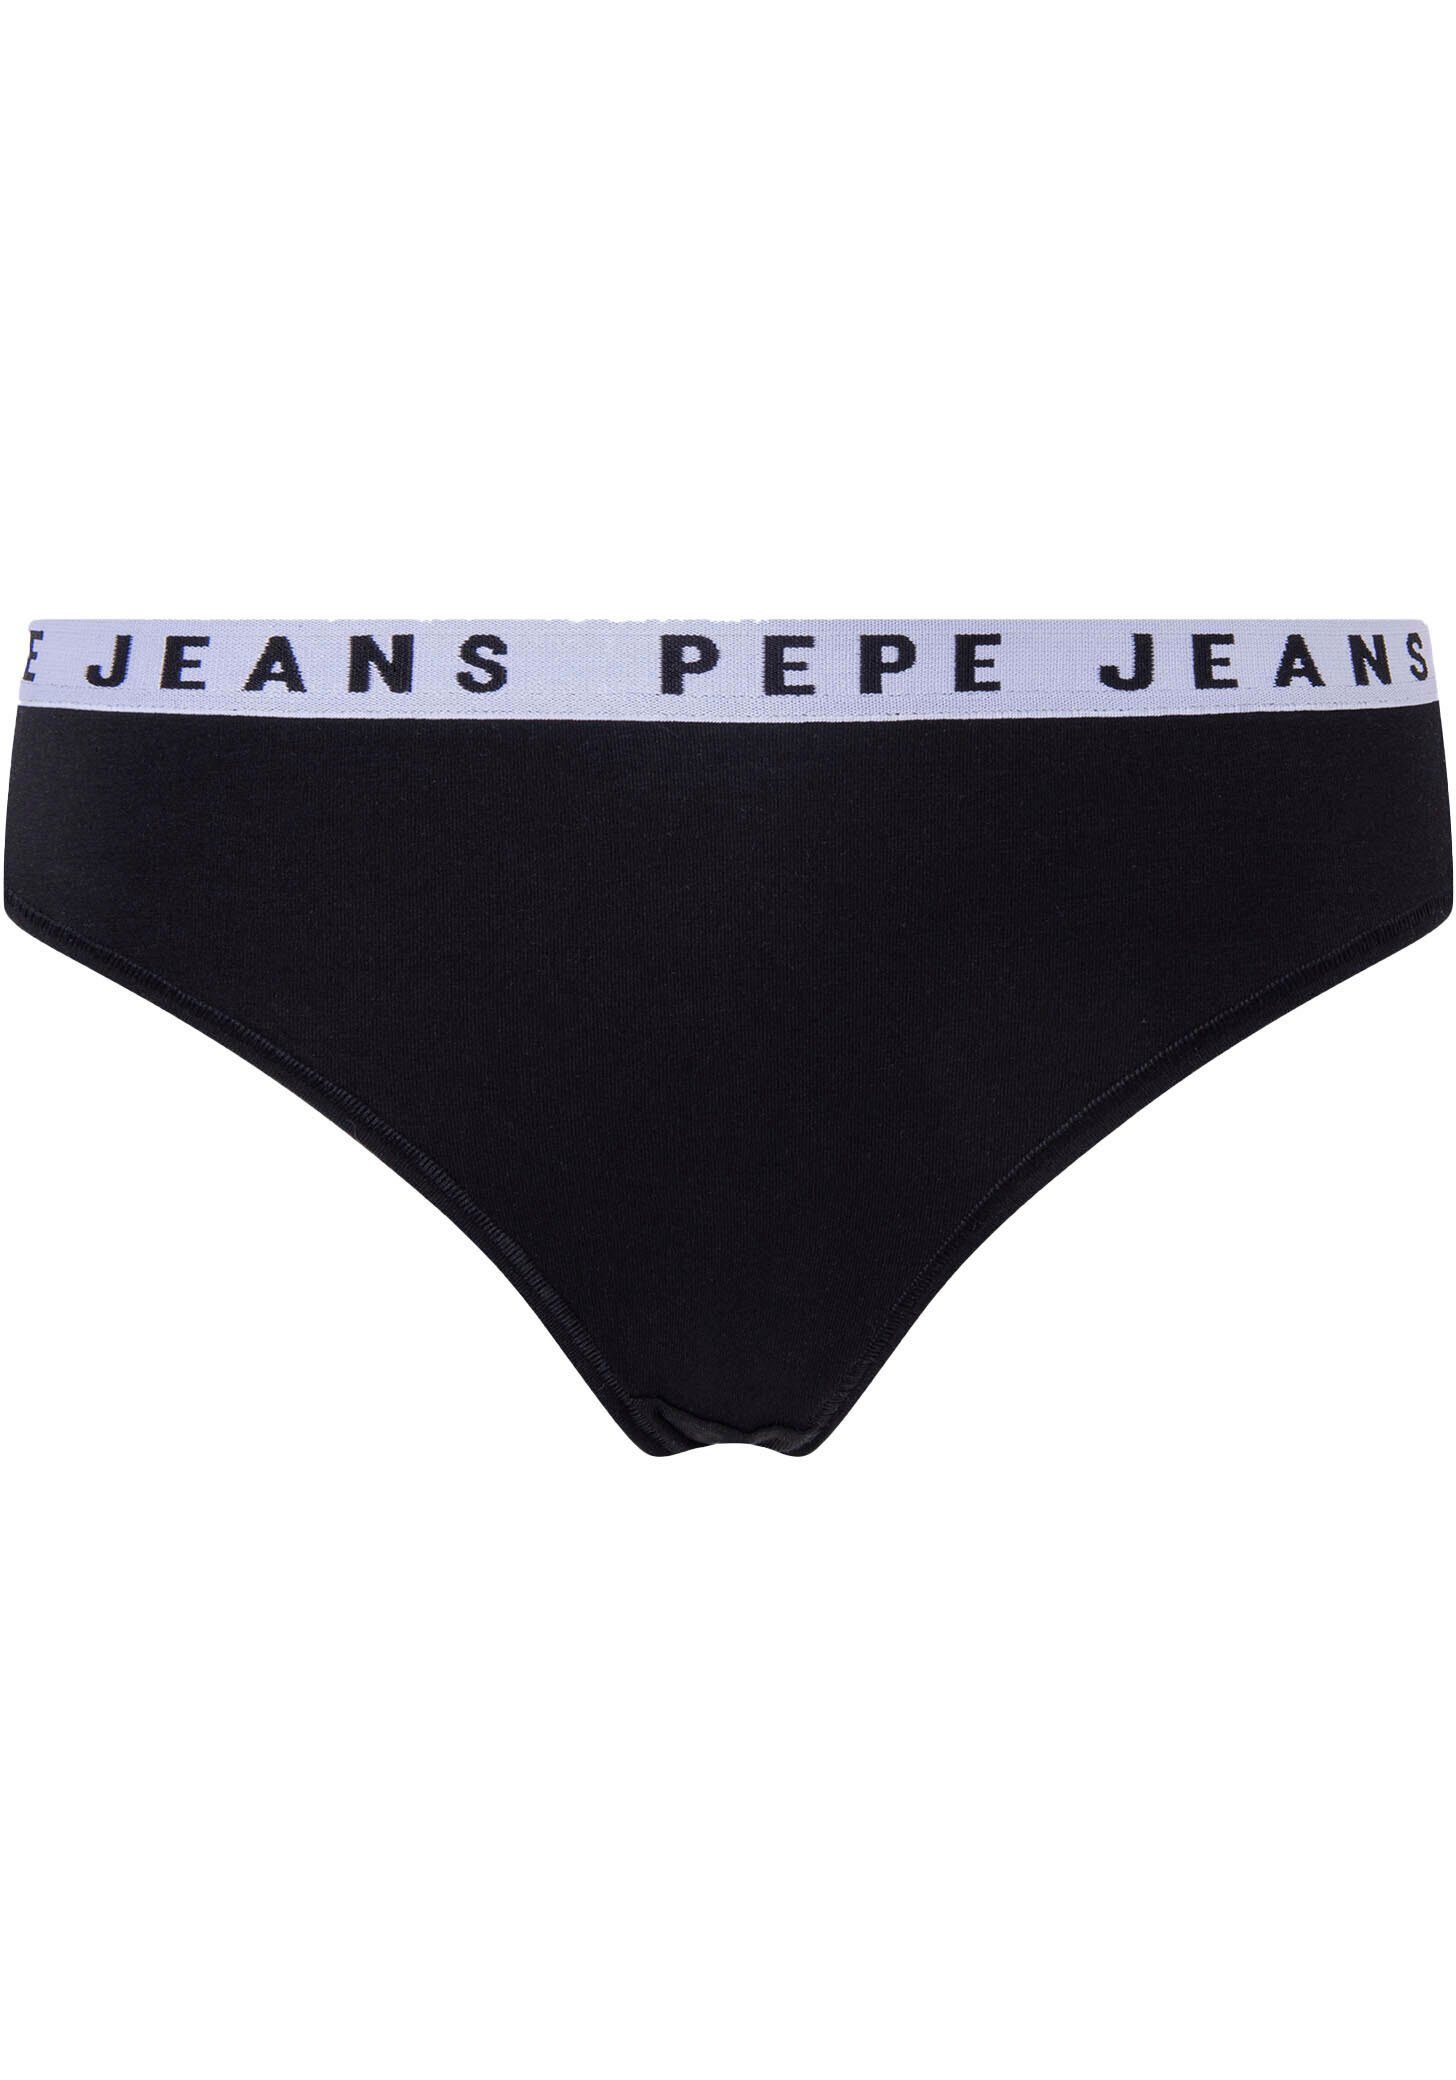 Jeans String Pepe Thong Logo schwarz